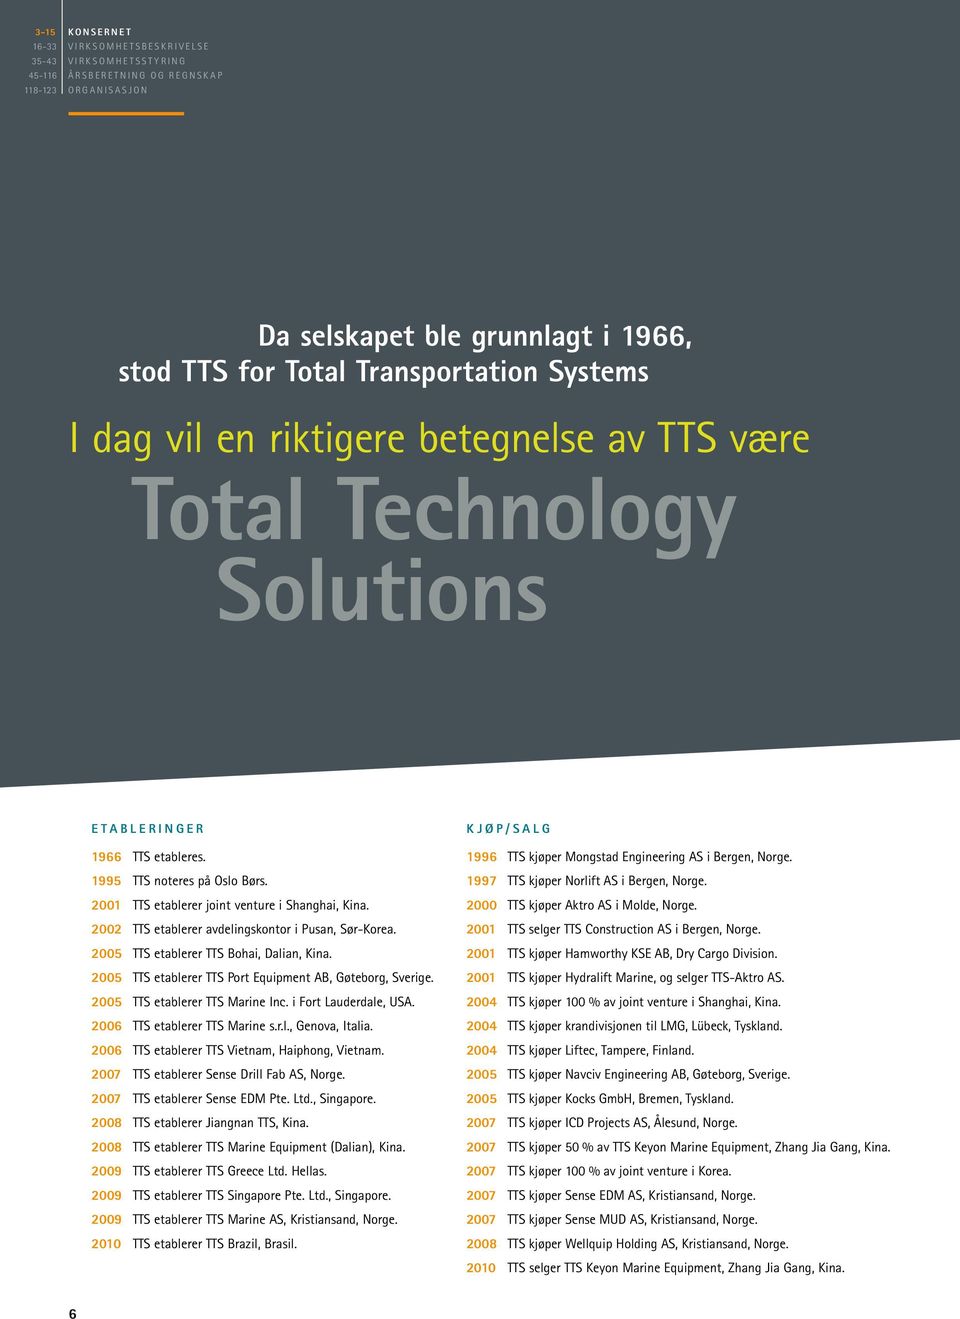 2002 TTS etablerer avdelingskontor i Pusan, Sør-Korea. 2005 TTS etablerer TTS Bohai, Dalian, Kina. 2005 TTS etablerer TTS Port Equipment AB, Gøteborg, Sverige. 2005 TTS etablerer TTS Marine Inc.